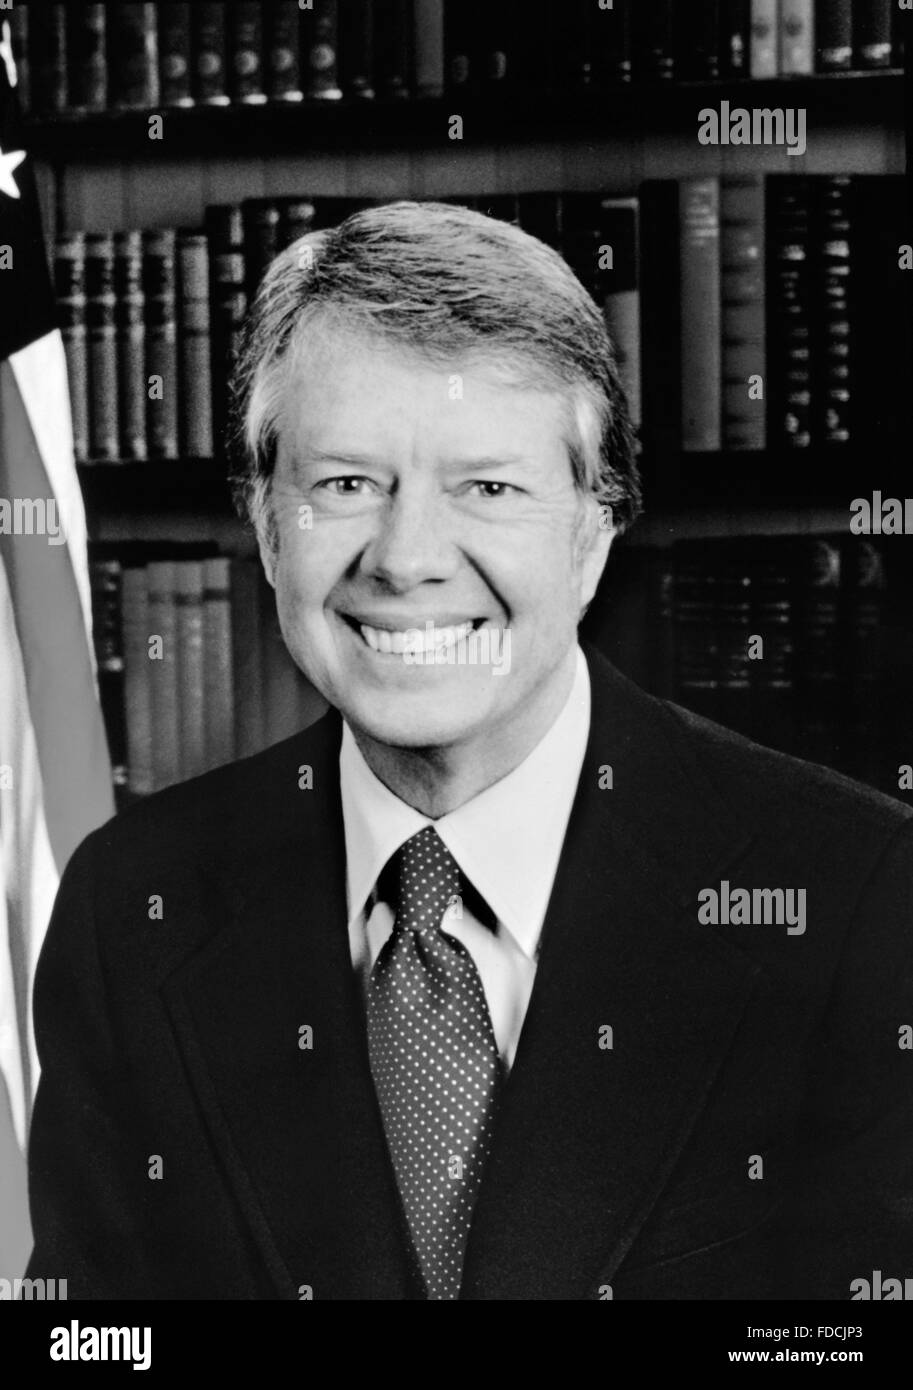 Jimmy Carter. Photo Officiel de la Maison Blanche de Jimmy Carter, 39e Président des Etats-Unis, Janvier 1977 Banque D'Images